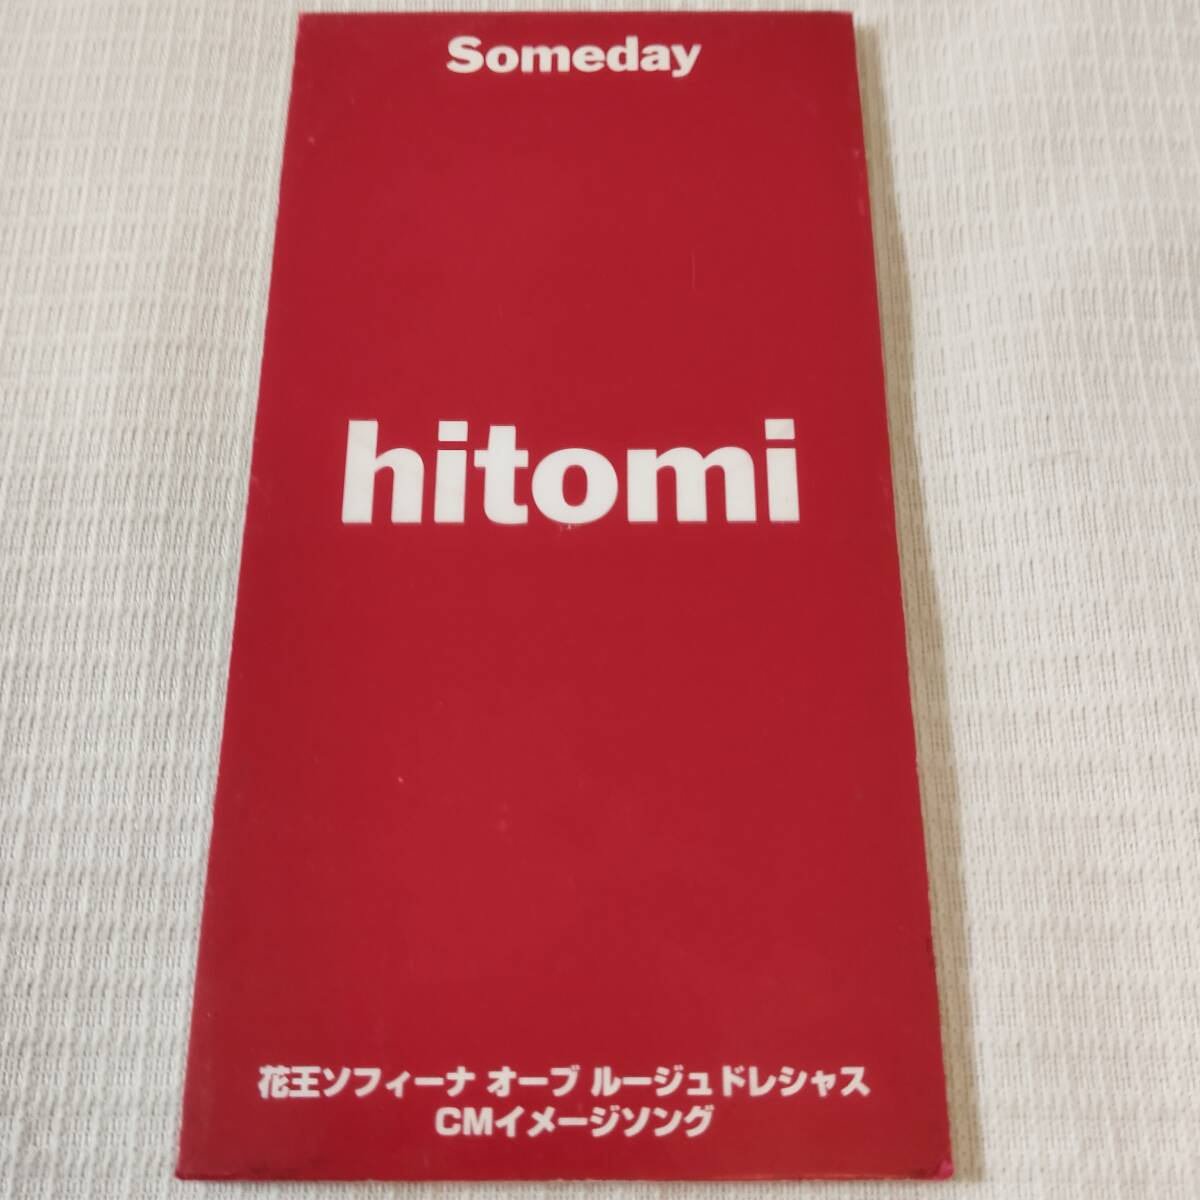  б/у 8.CD Японская музыка не продается hitomi Kao Sofina o-b rouge dore автомобиль sSomeday.. есть 